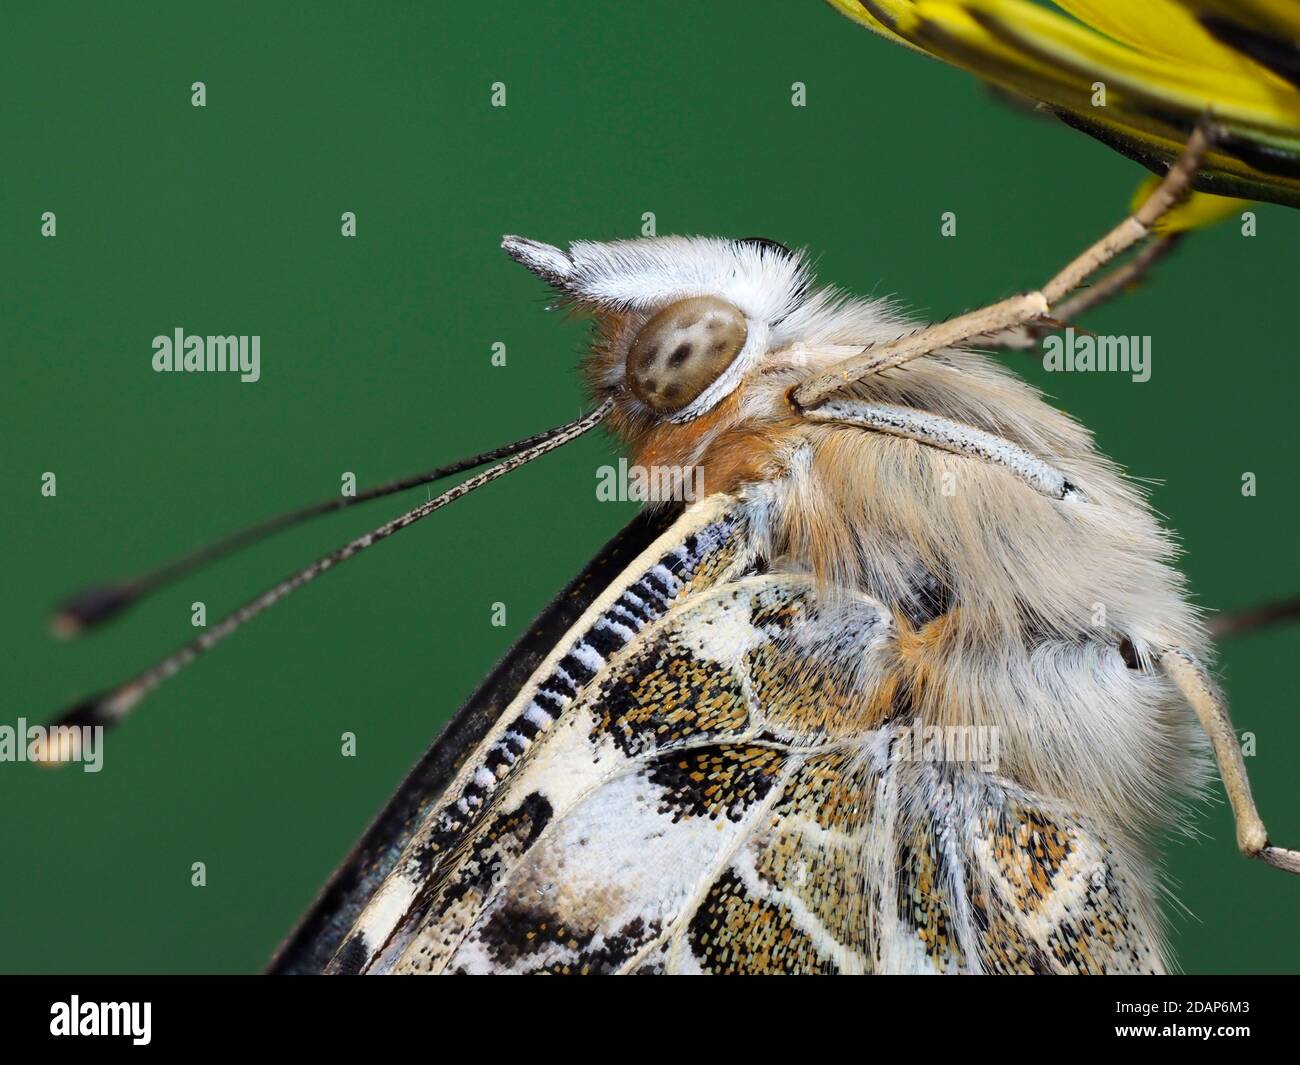 Mariposa de la dama pintada, (Vanessa cardui), Kent Reino Unido, de cerca mostrando los ojos y las antenas, descansando en la flor del diente de león, jardín, imagen de foco apilado Foto de stock